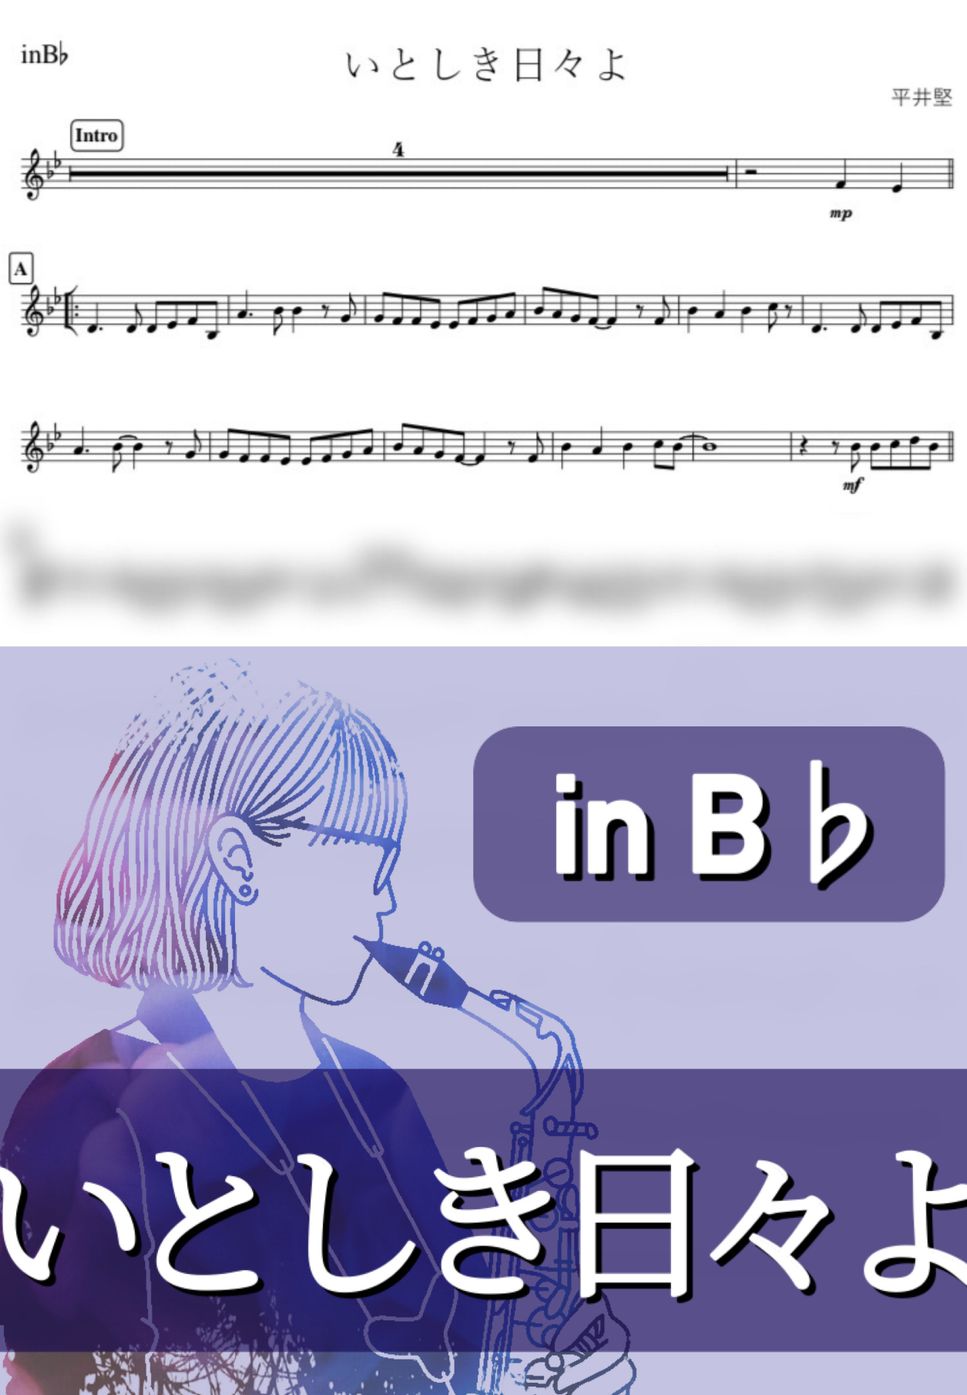 平井堅 - いとしき日々よ (B♭) by kanamusic